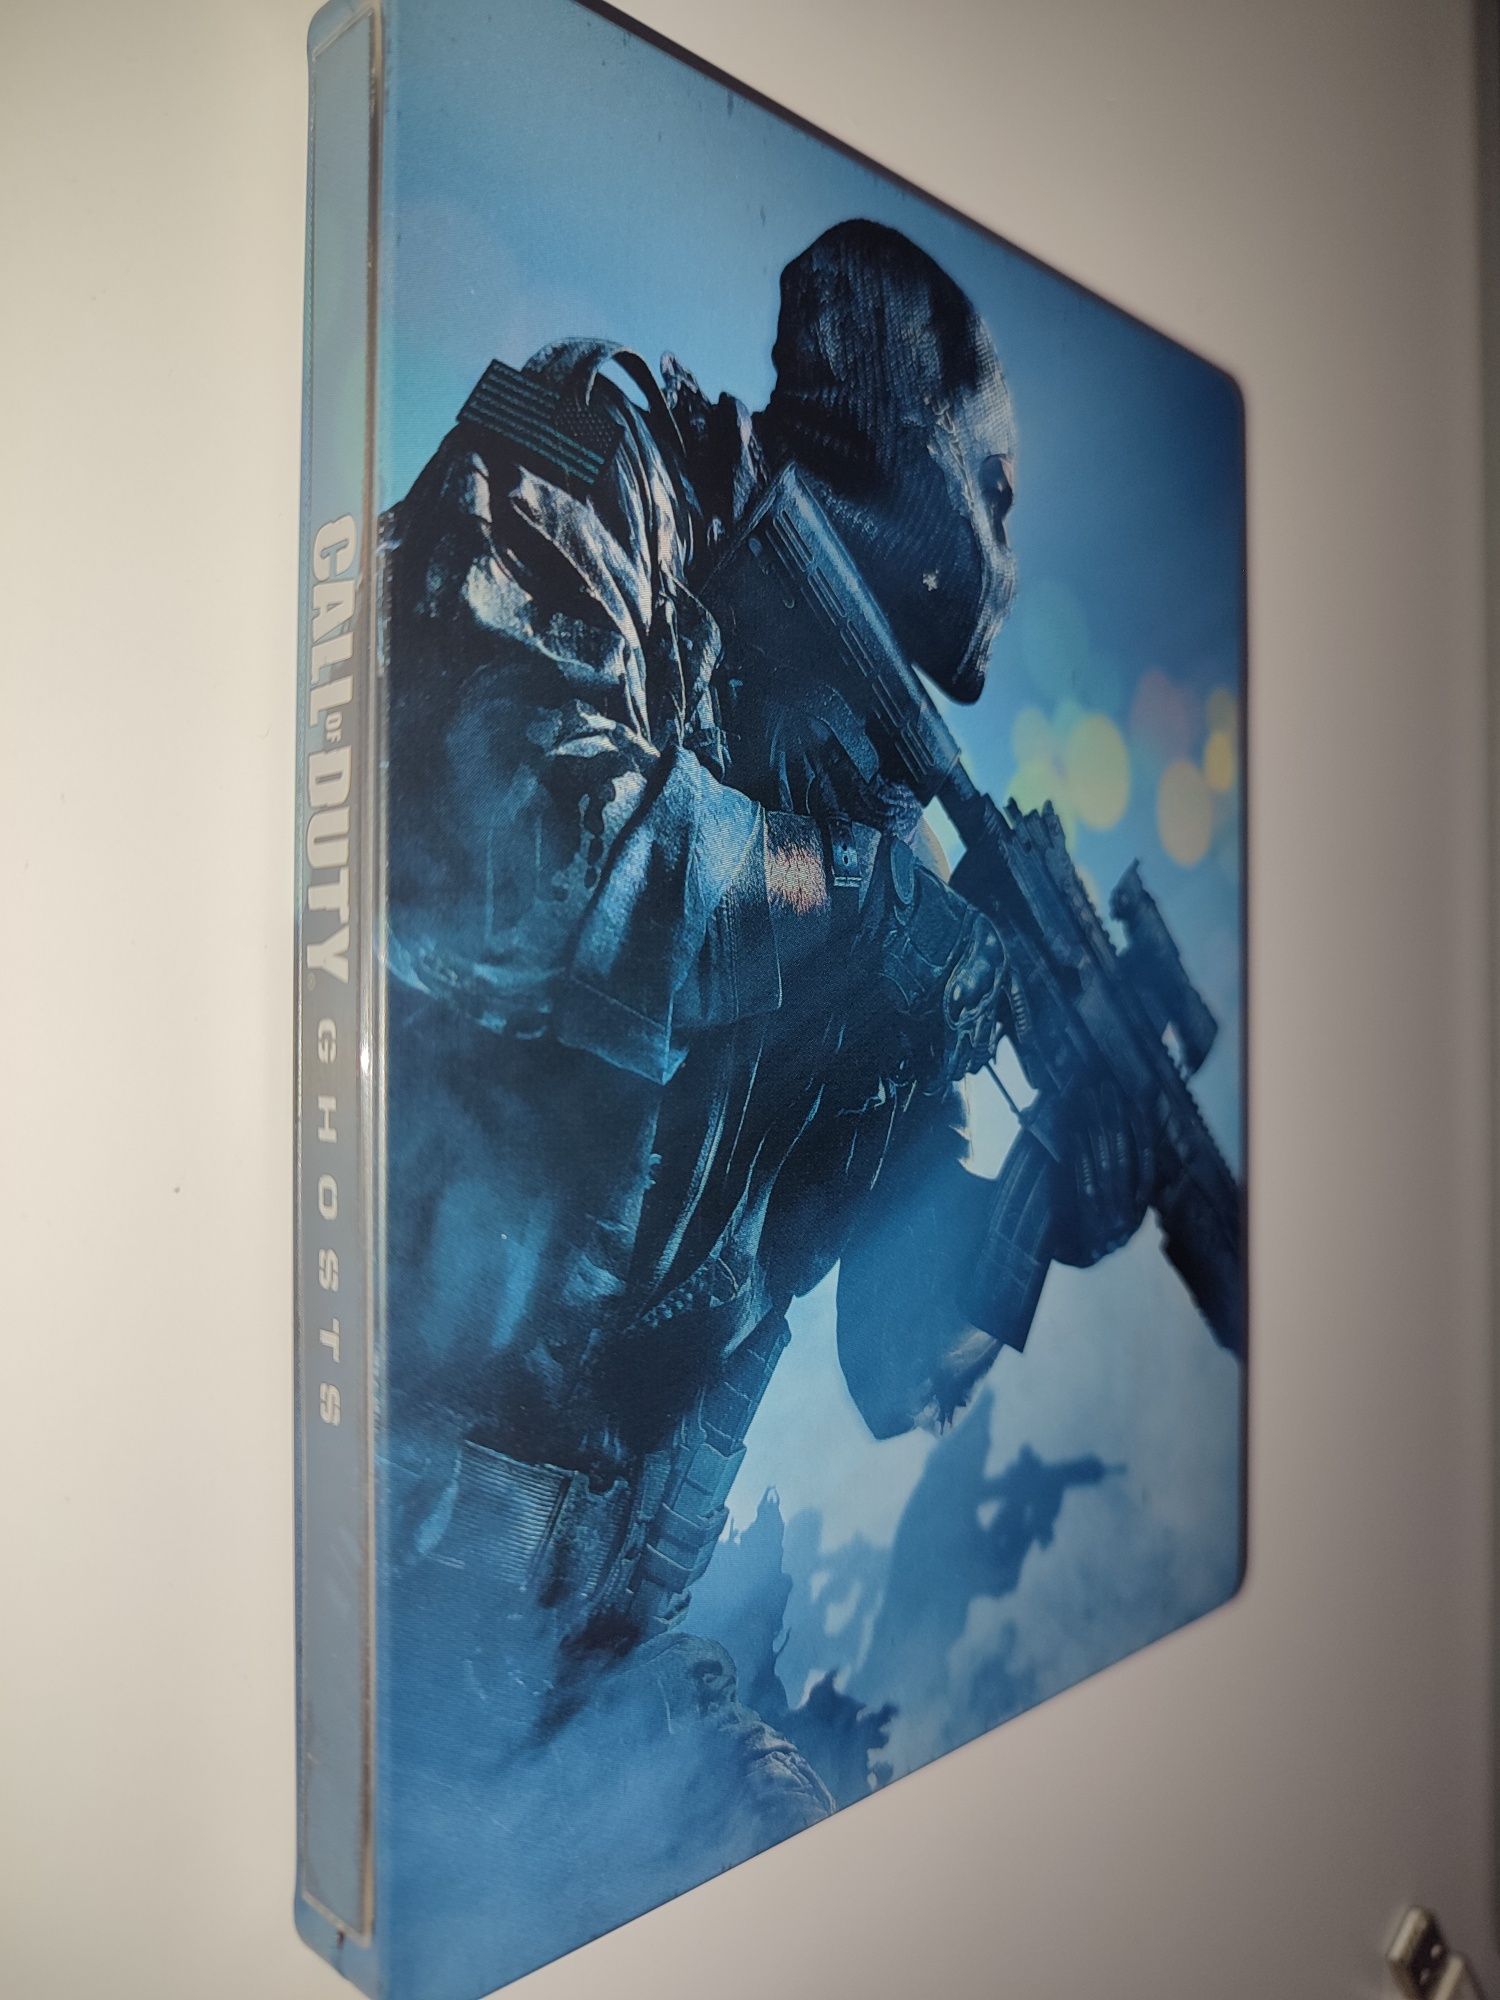 Gra Ps3 Call of Duty Ghosts Stelbook Kolekcjonerska gry PlayStation 3